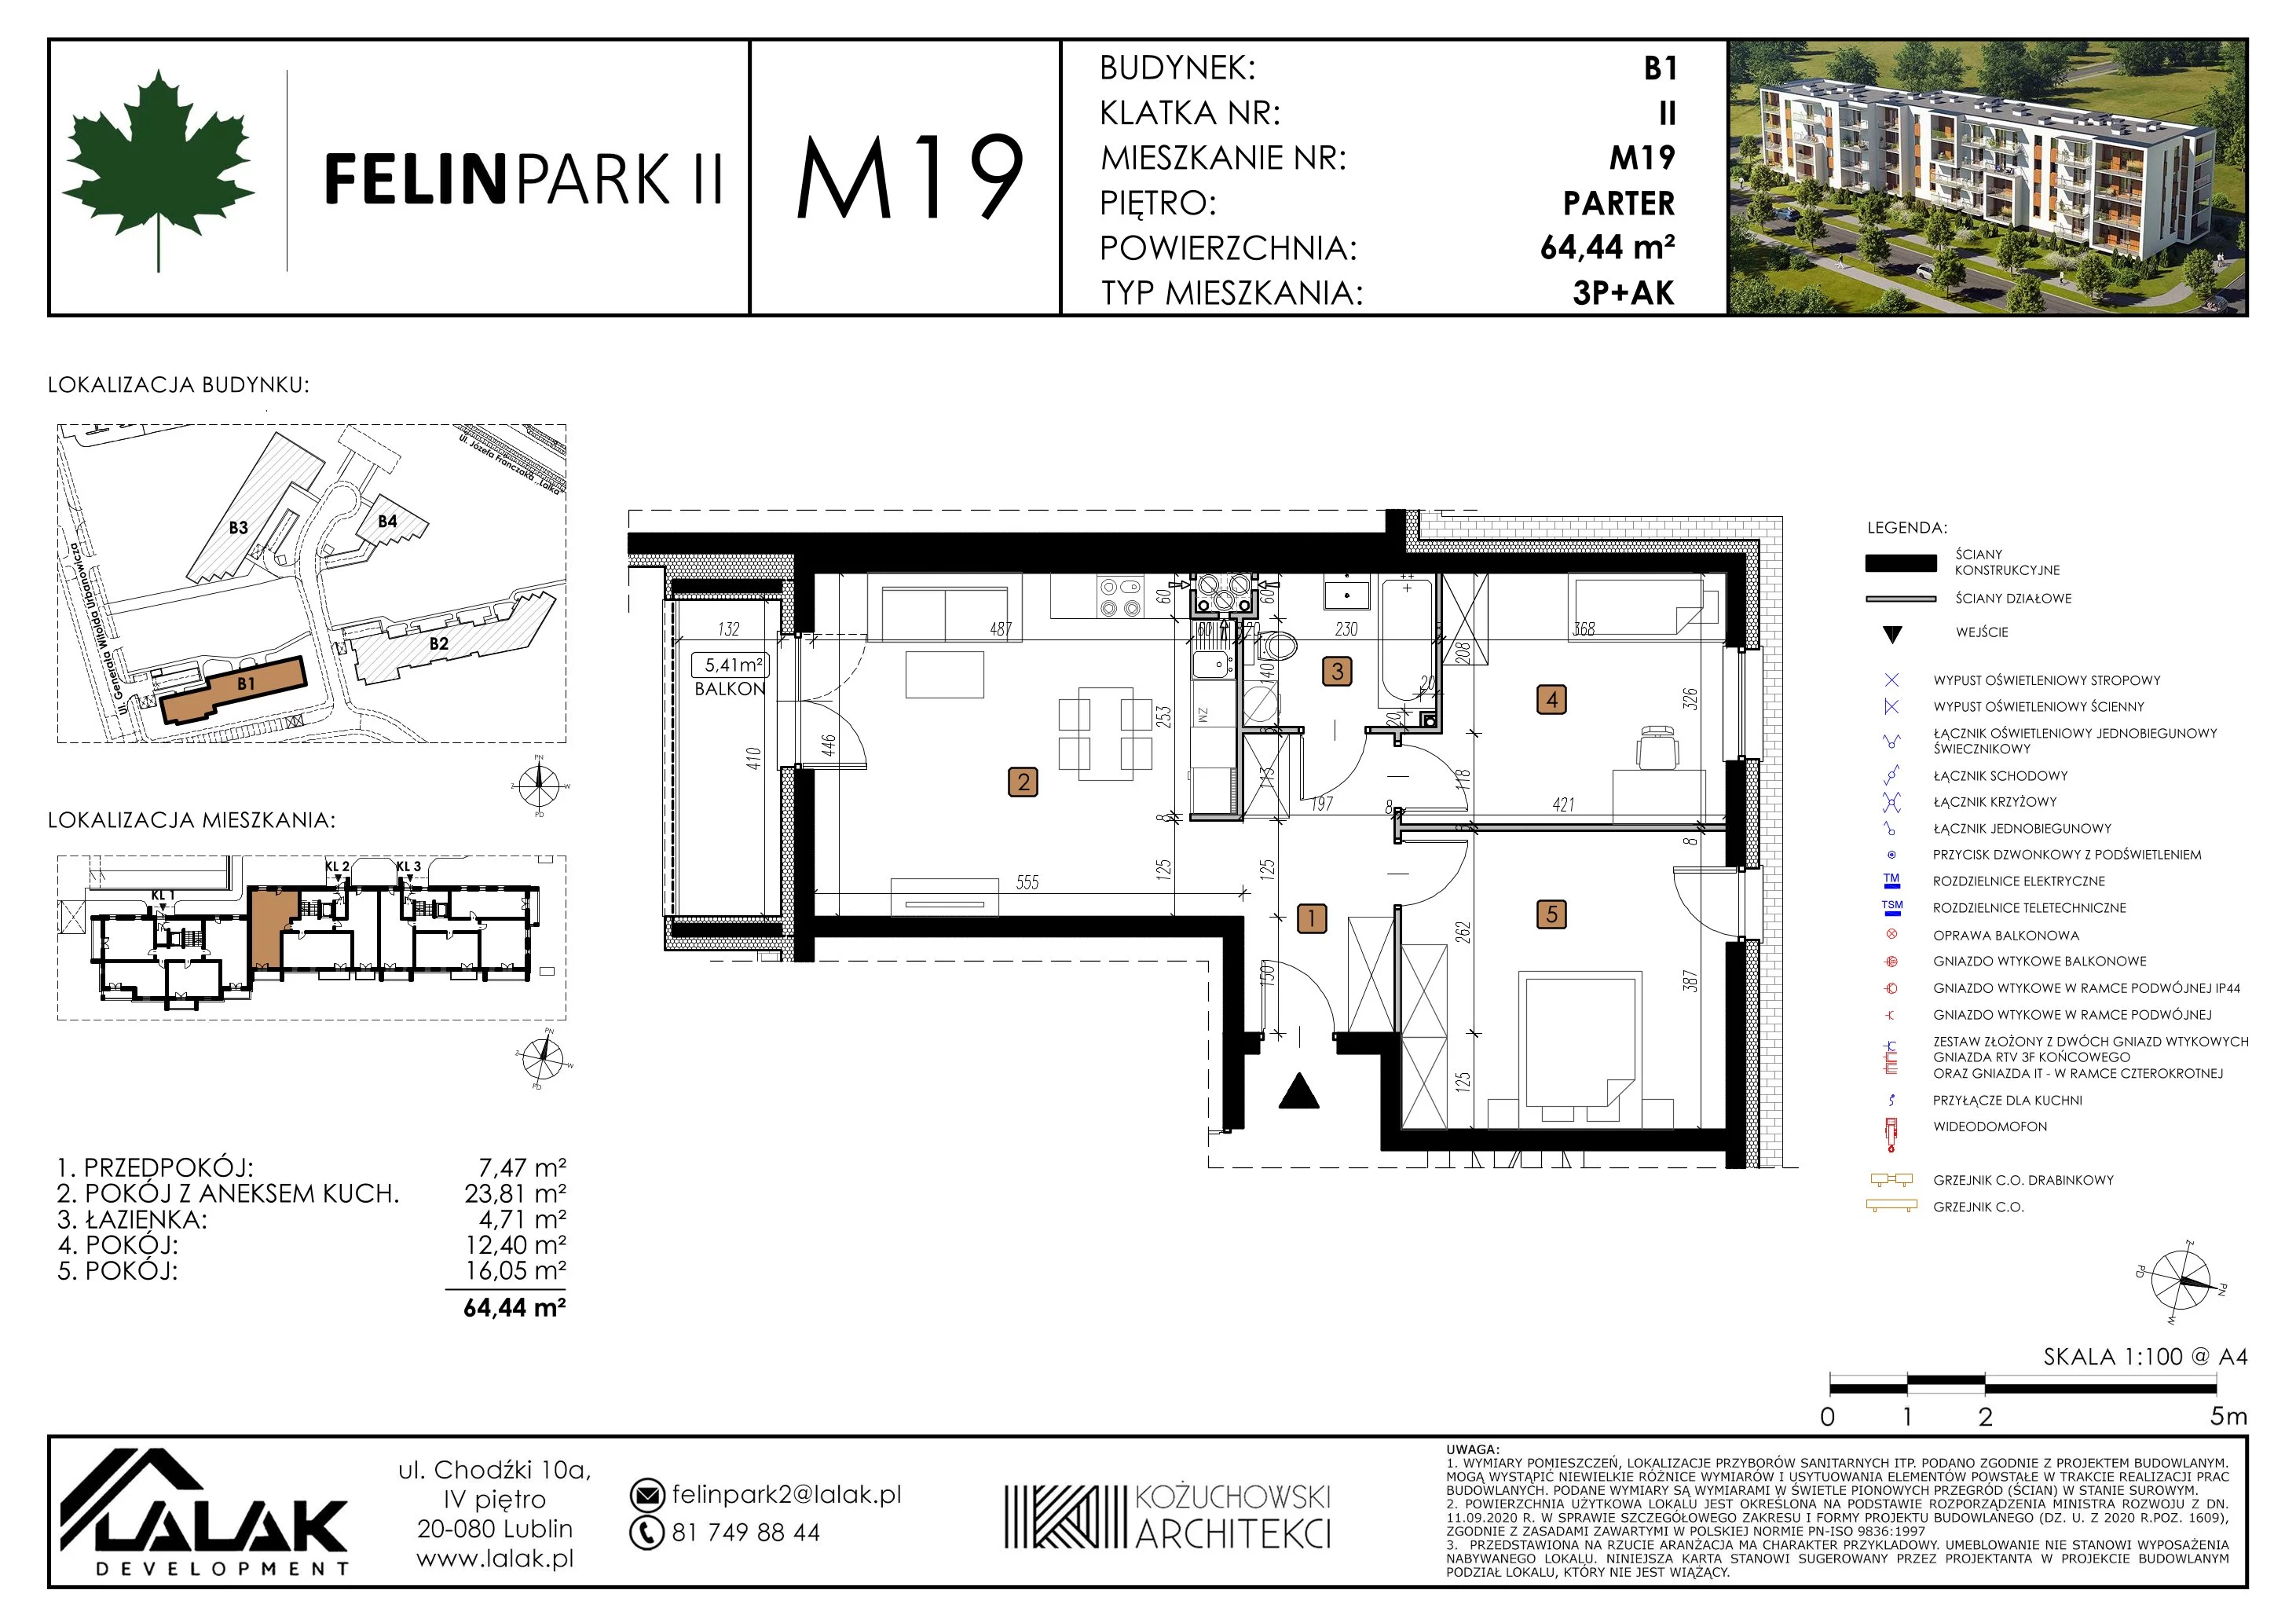 Mieszkanie 64,42 m², parter, oferta nr B1_M19/P, Felin Park II, Lublin, Felin, ul. gen. Stanisława Skalskiego 8-10